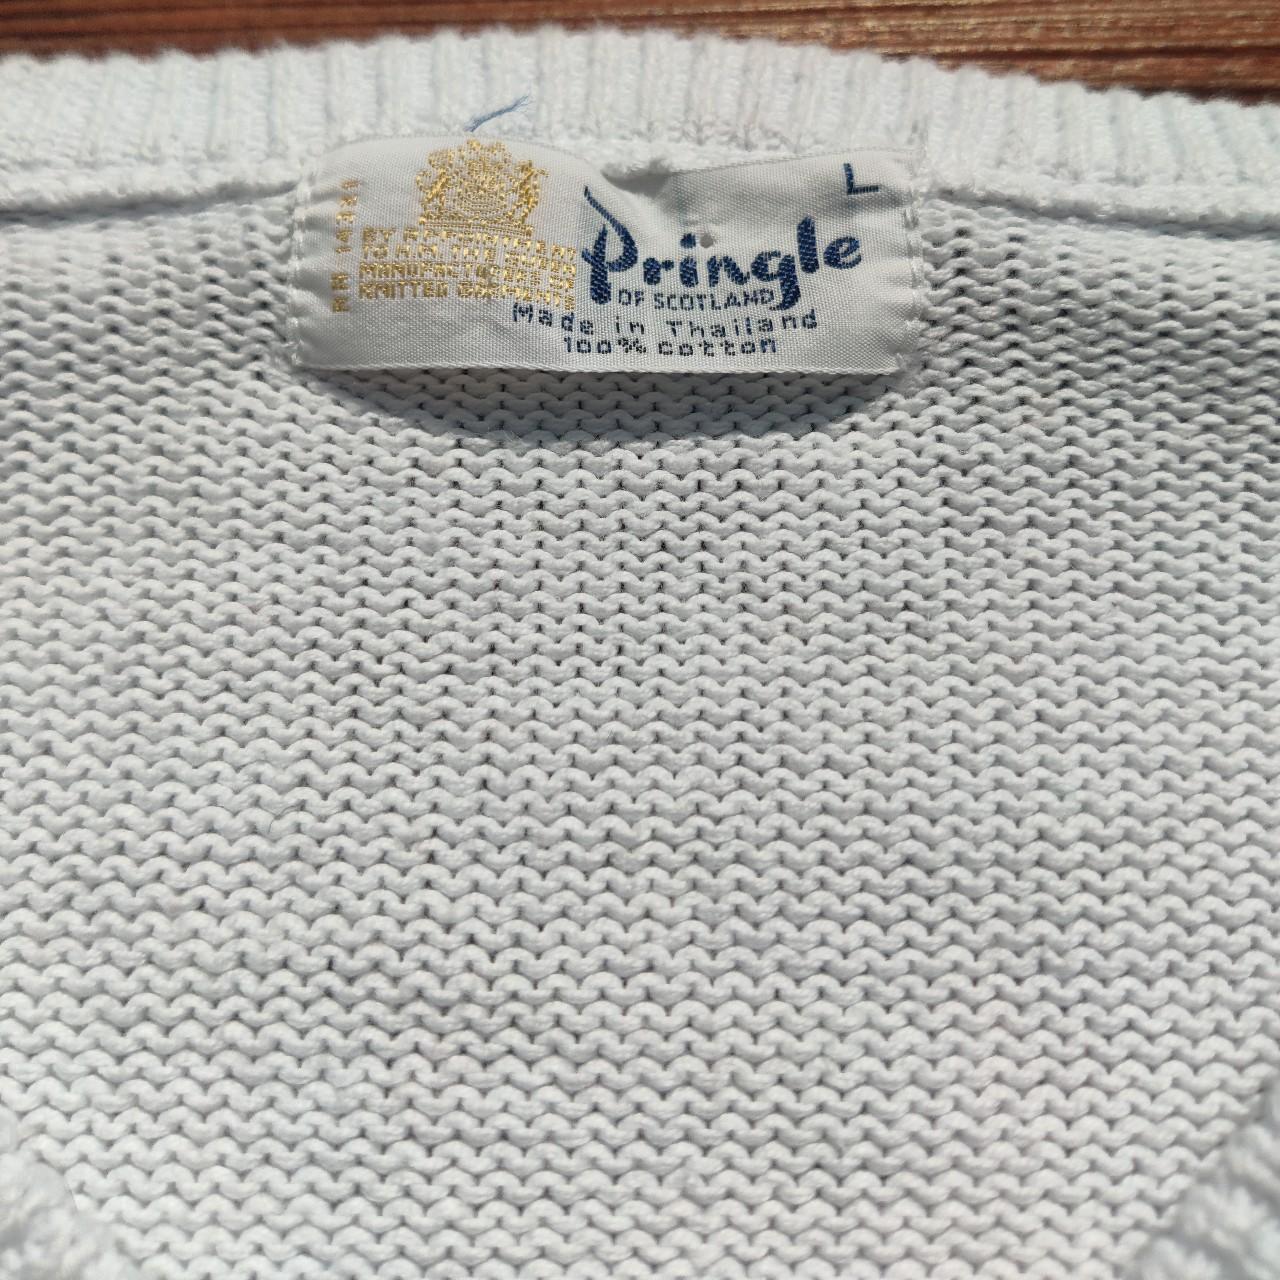 Product Image 3 - Vintage Pringle Sweater
-------------
100% Cotton

Size: L
Pit